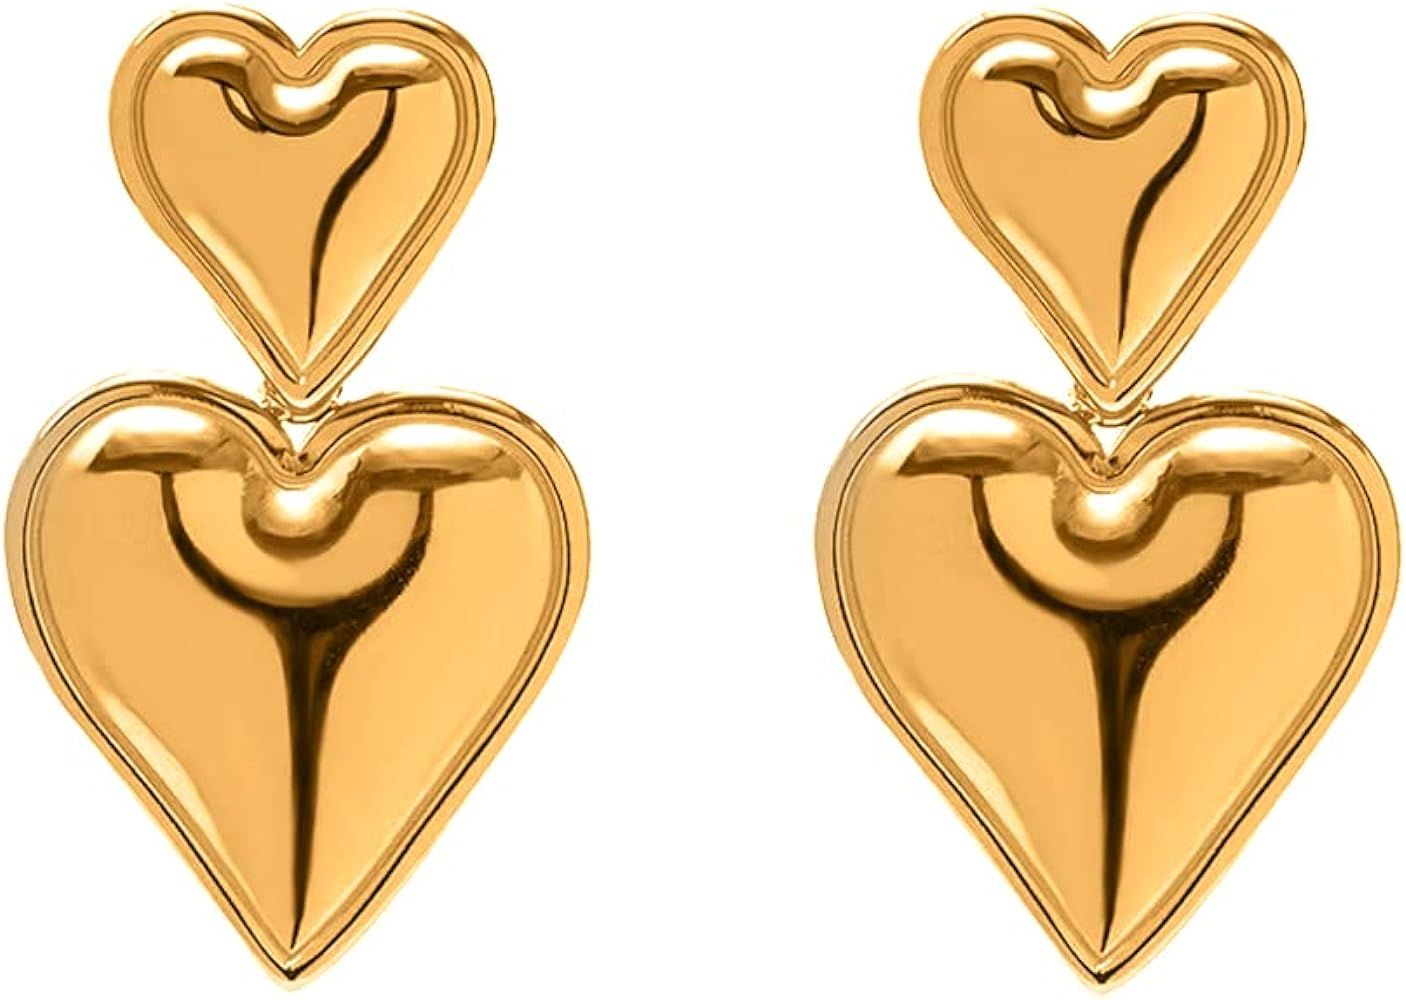 Heart Drop Earrings Double Heart Statement Dangle Earrings for Women Girls Gold Silver | Amazon (CA)